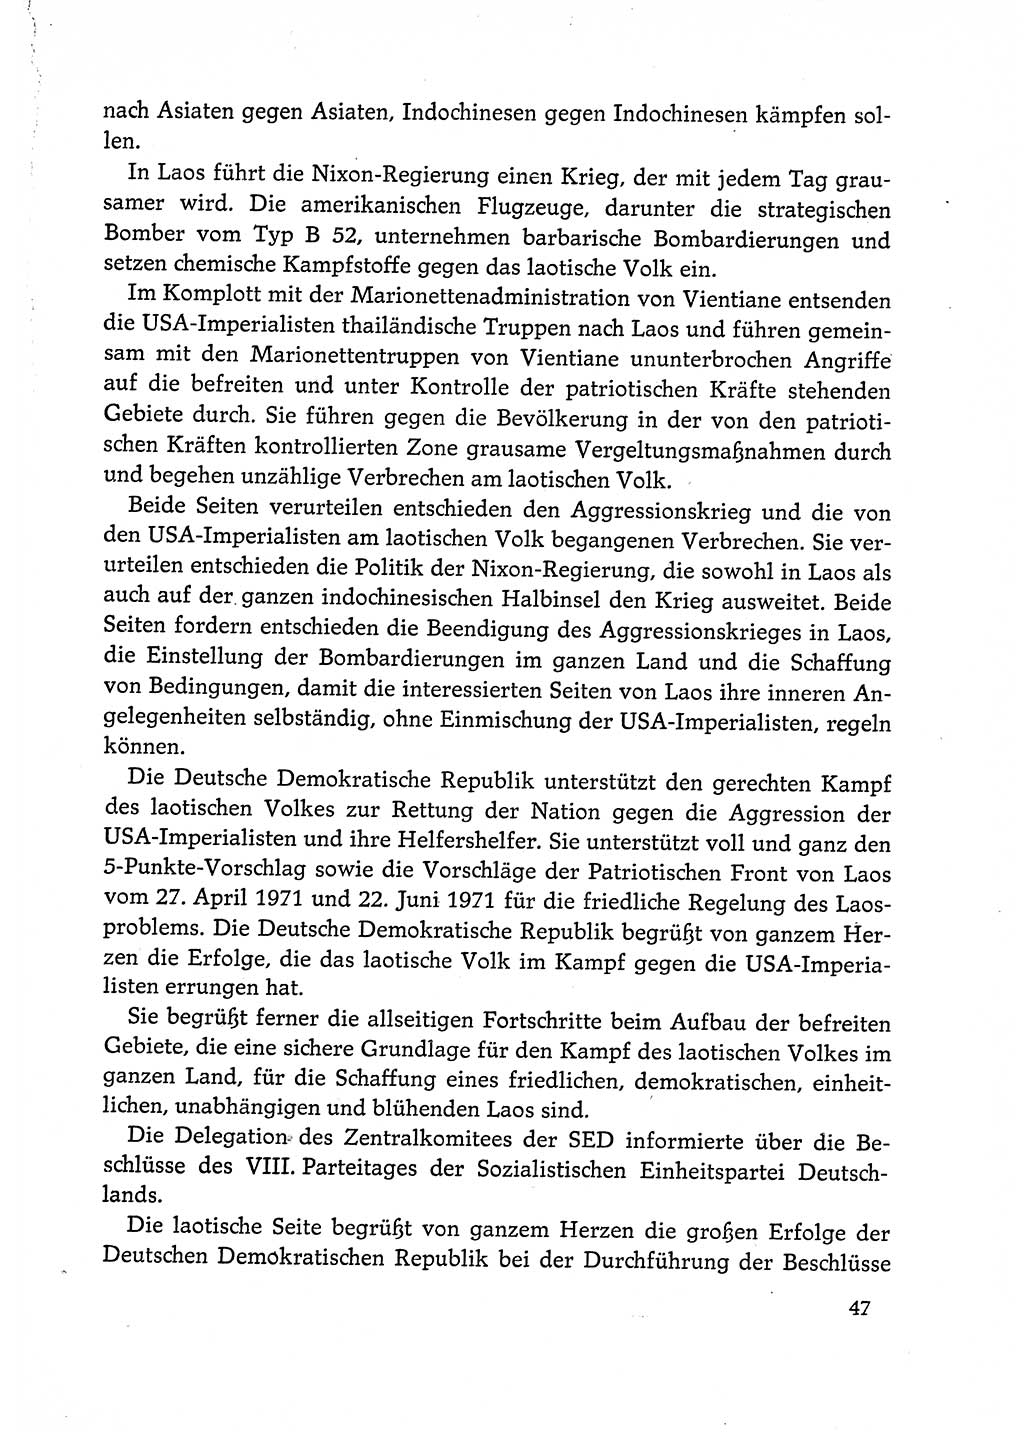 Dokumente der Sozialistischen Einheitspartei Deutschlands (SED) [Deutsche Demokratische Republik (DDR)] 1972-1973, Seite 47 (Dok. SED DDR 1972-1973, S. 47)